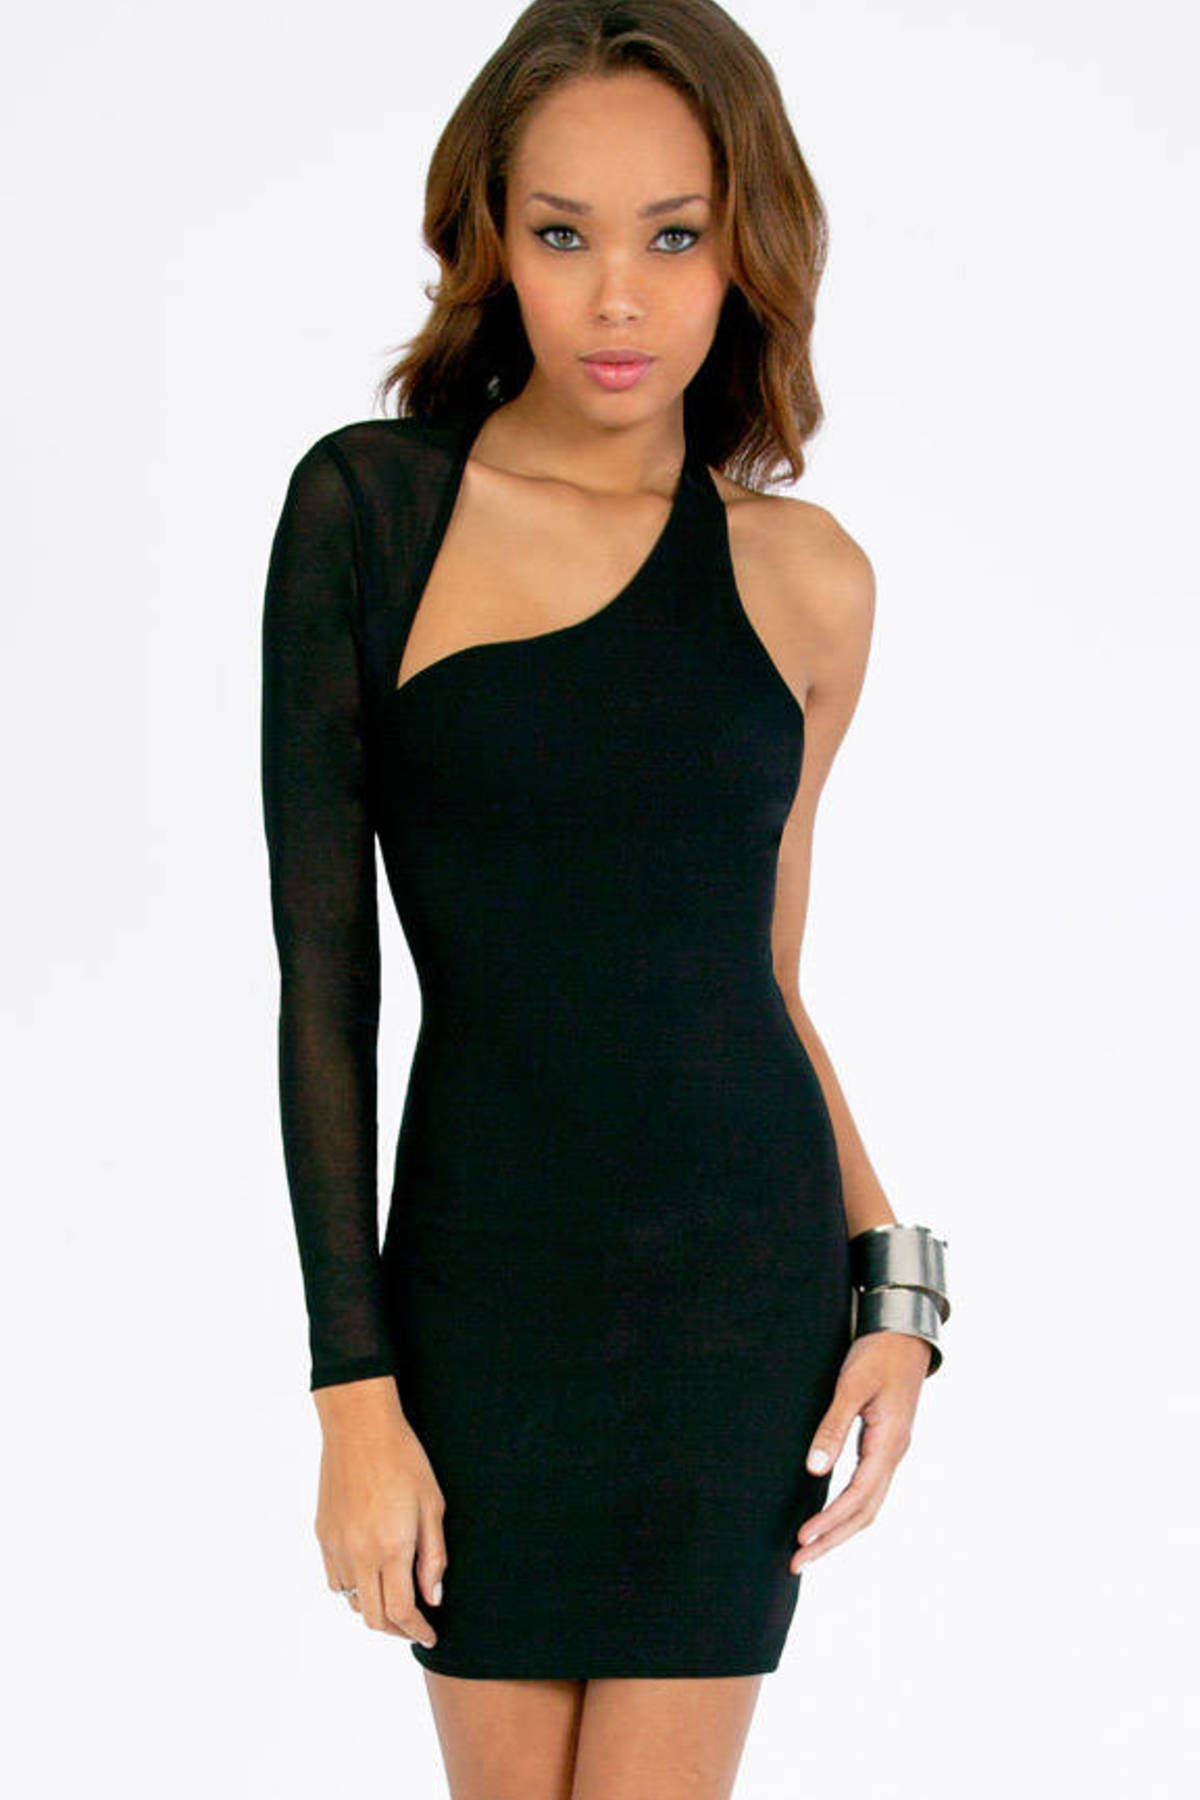 My Other Half Dress in Black - $46 | Tobi US